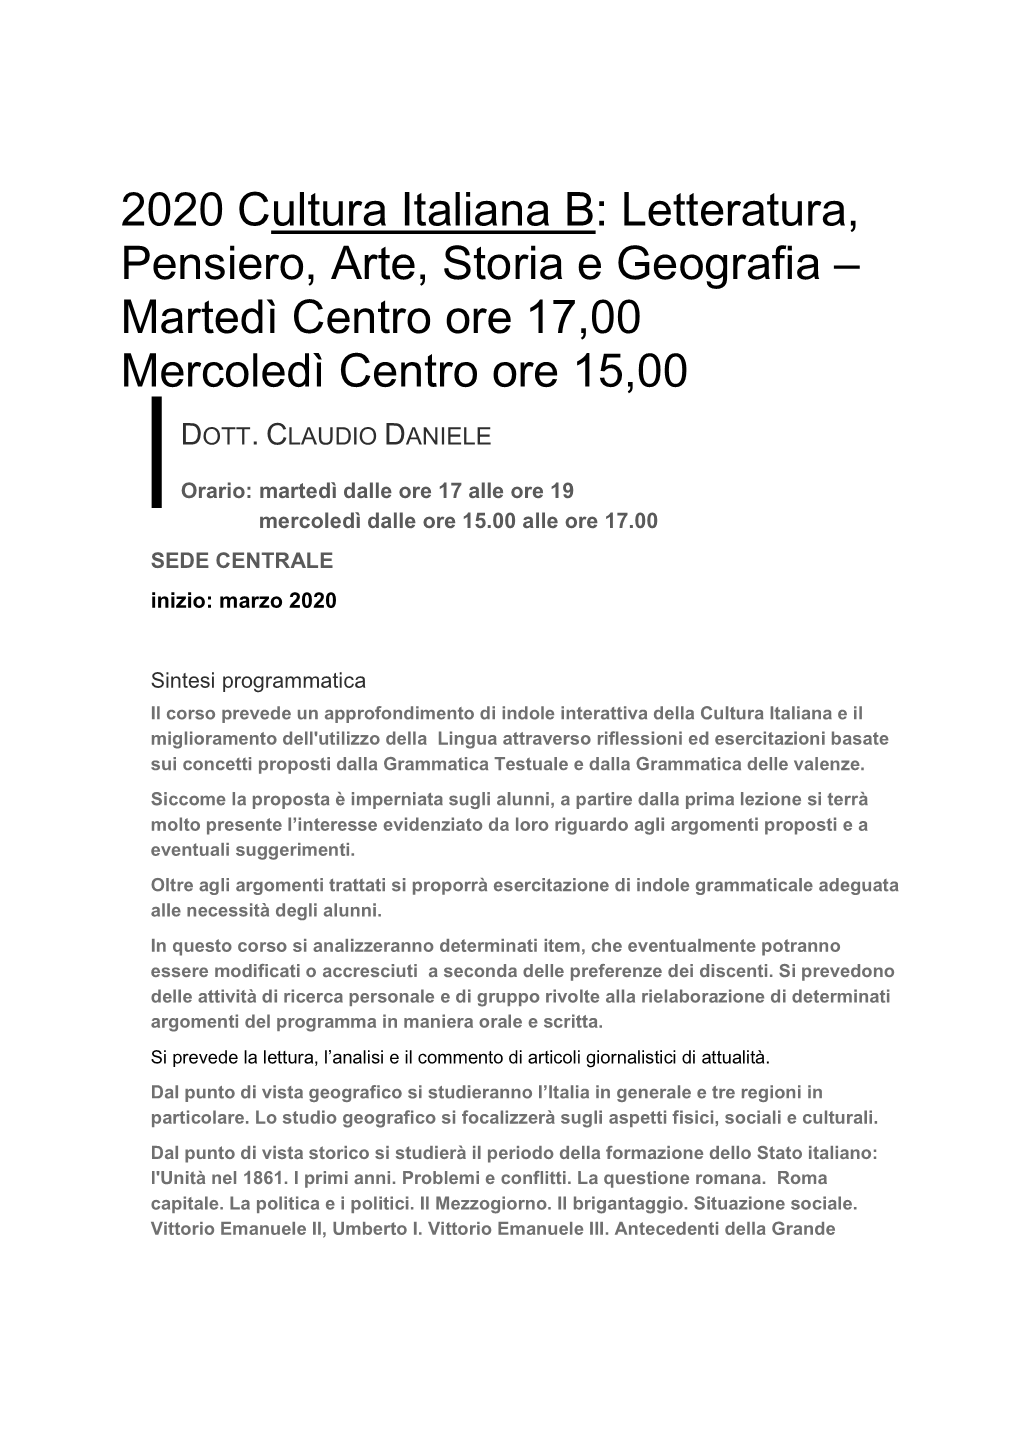 2020 Cultura Italiana B: Letteratura, Pensiero, Arte, Storia E Geografia – Martedì Centro Ore 17,00 Mercoledì Centro Ore 15,00